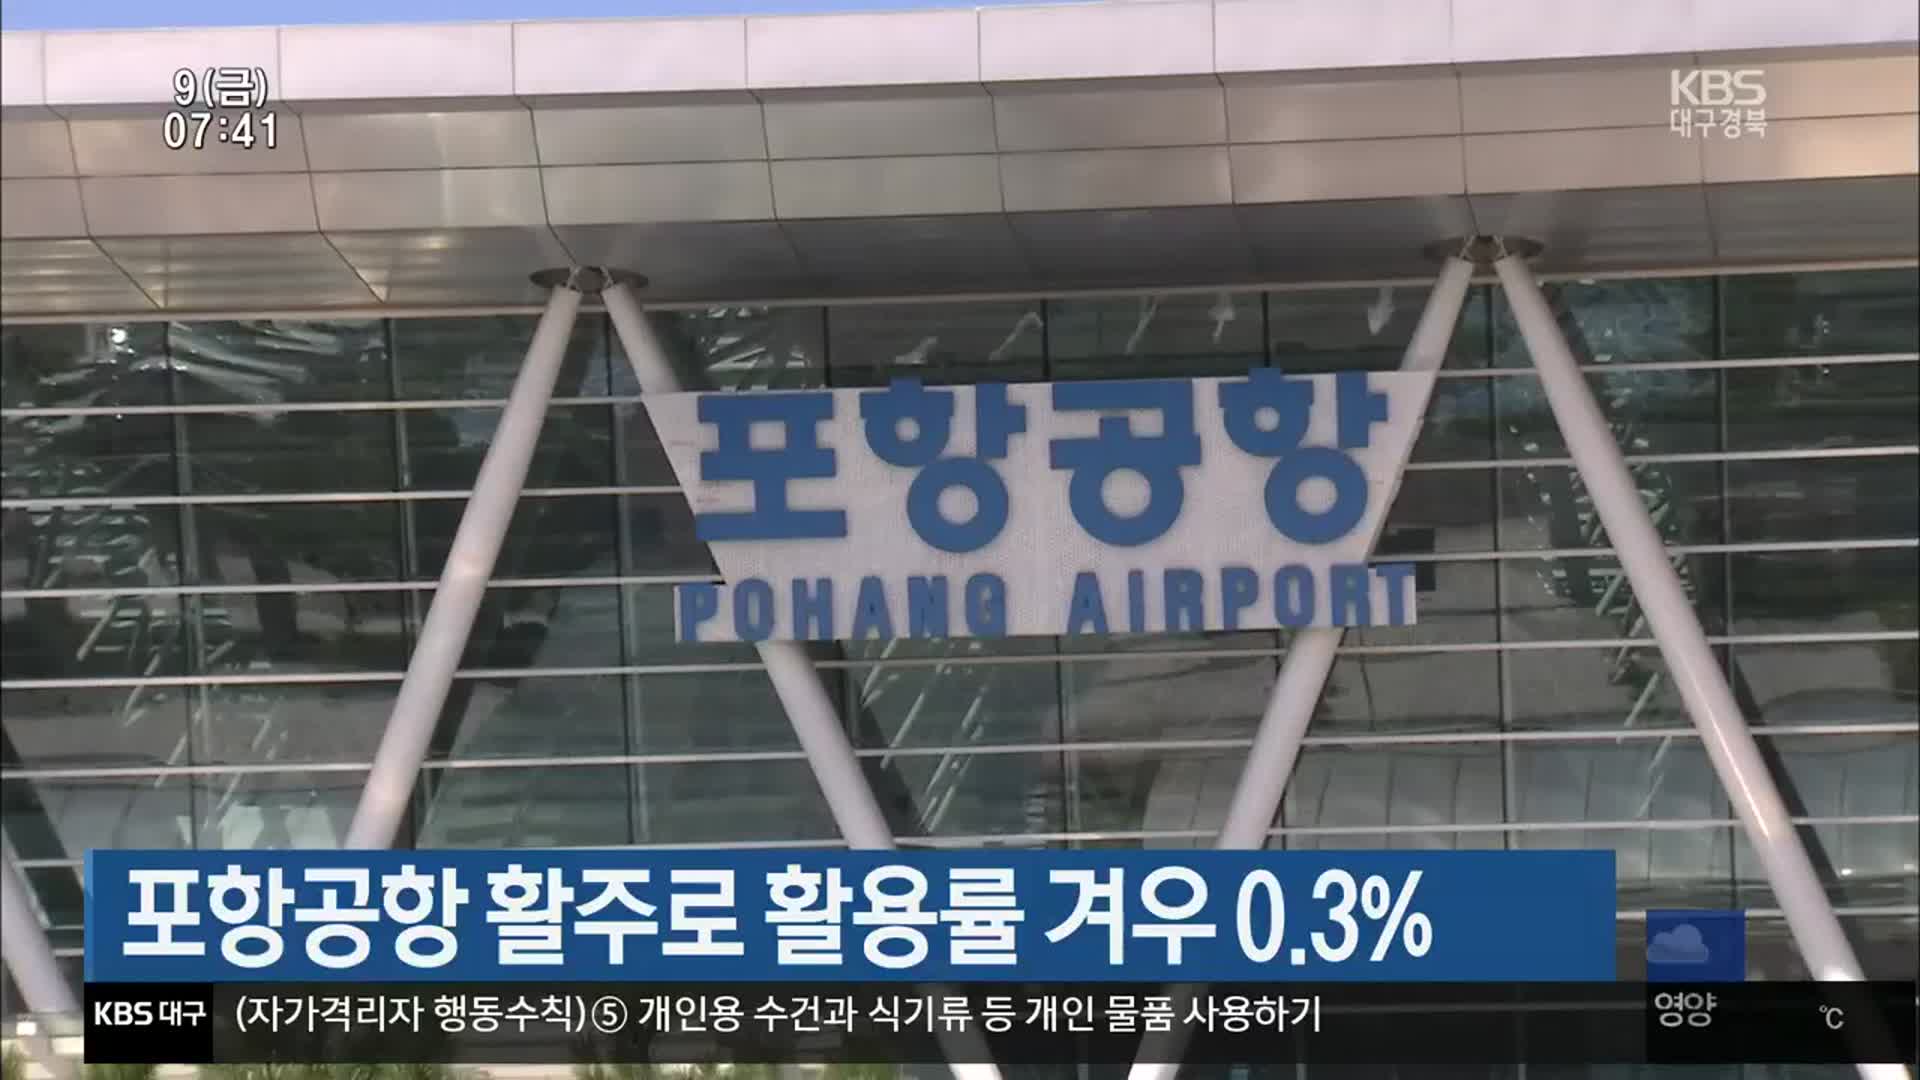 포항공항 활주로 활용률 겨우 0.3%